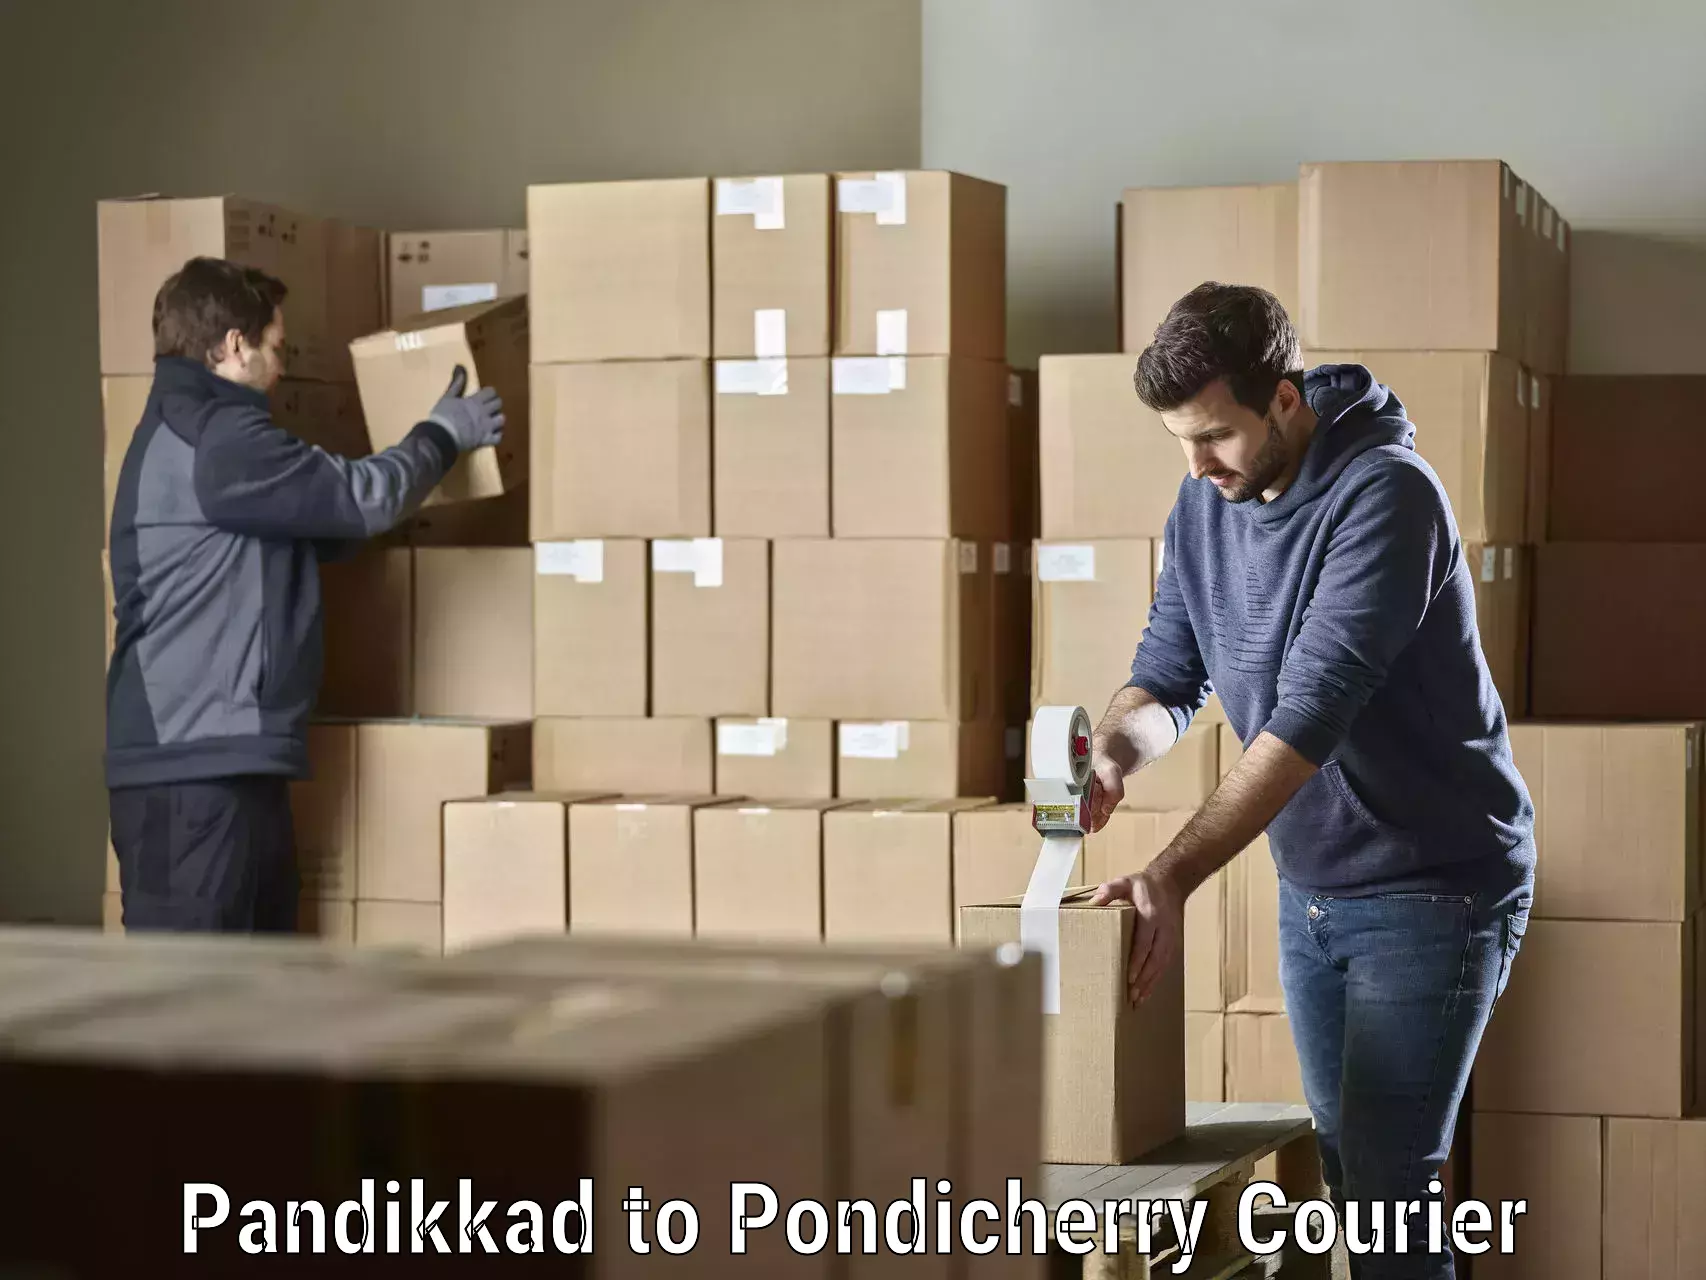 Next-generation courier services Pandikkad to Pondicherry